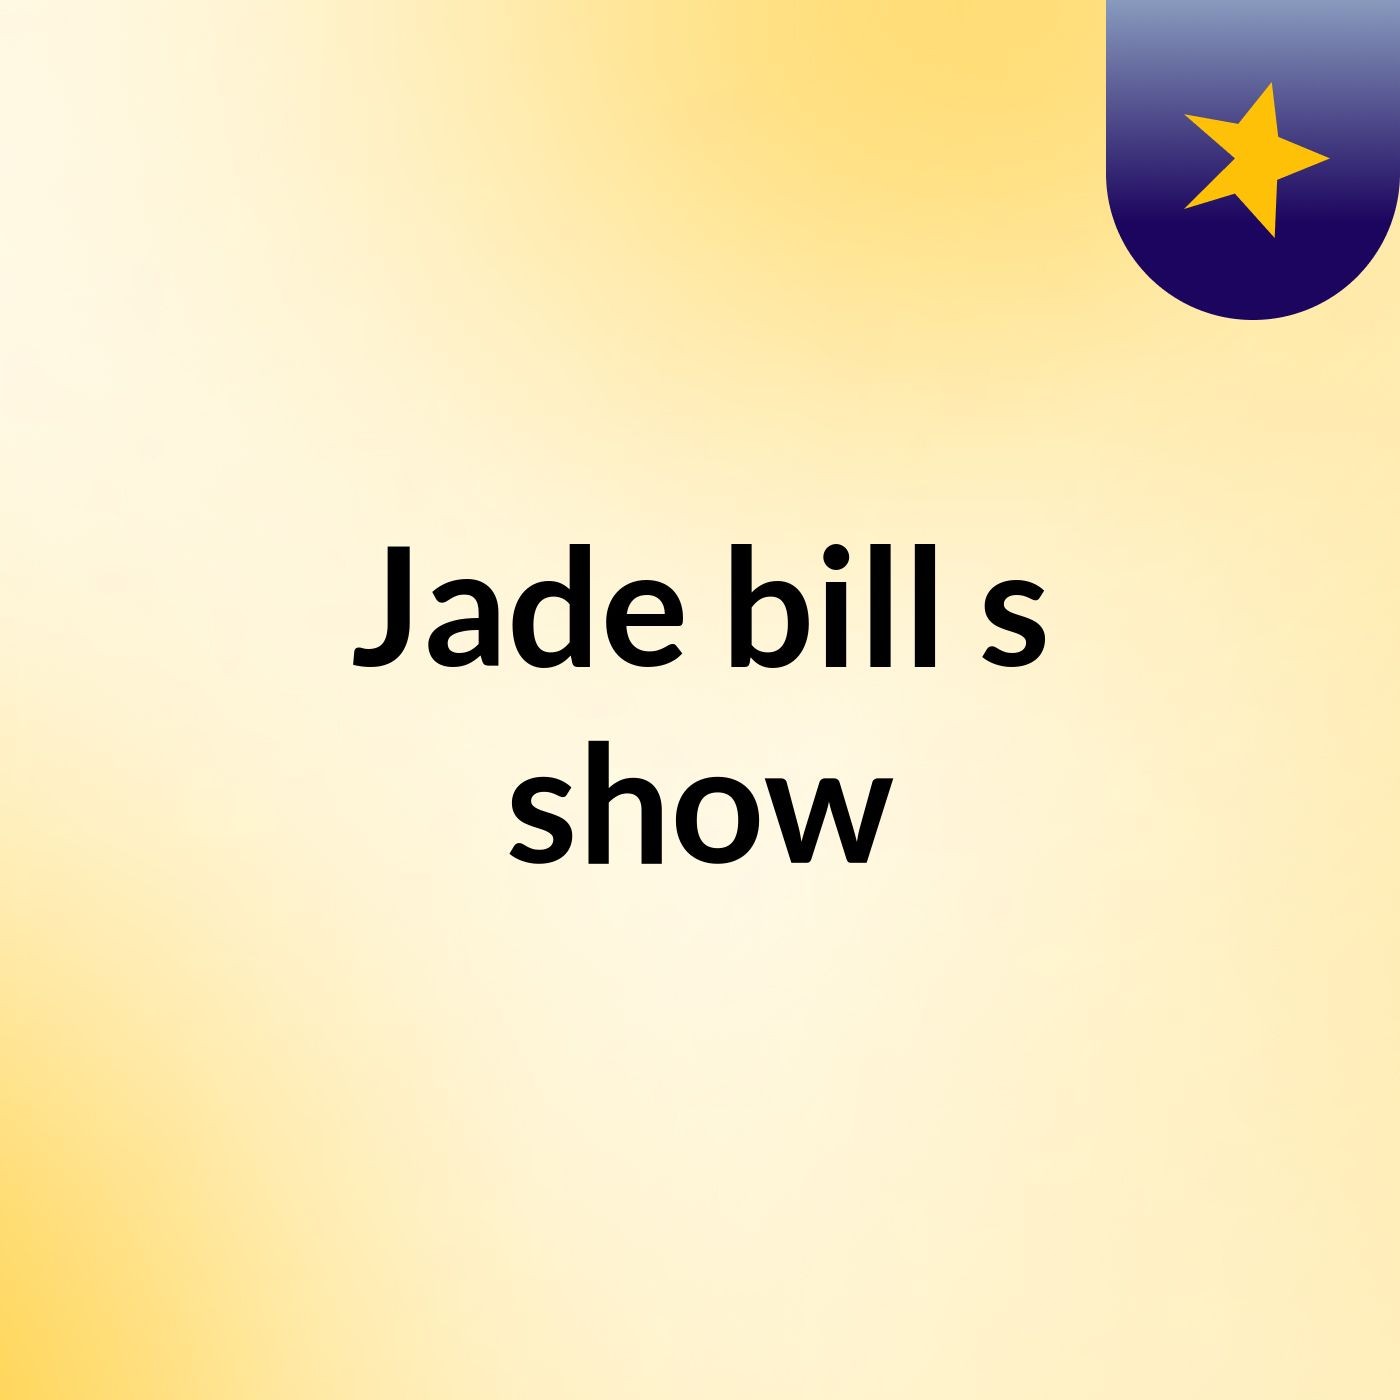 Episode 3 - Jade bill's show